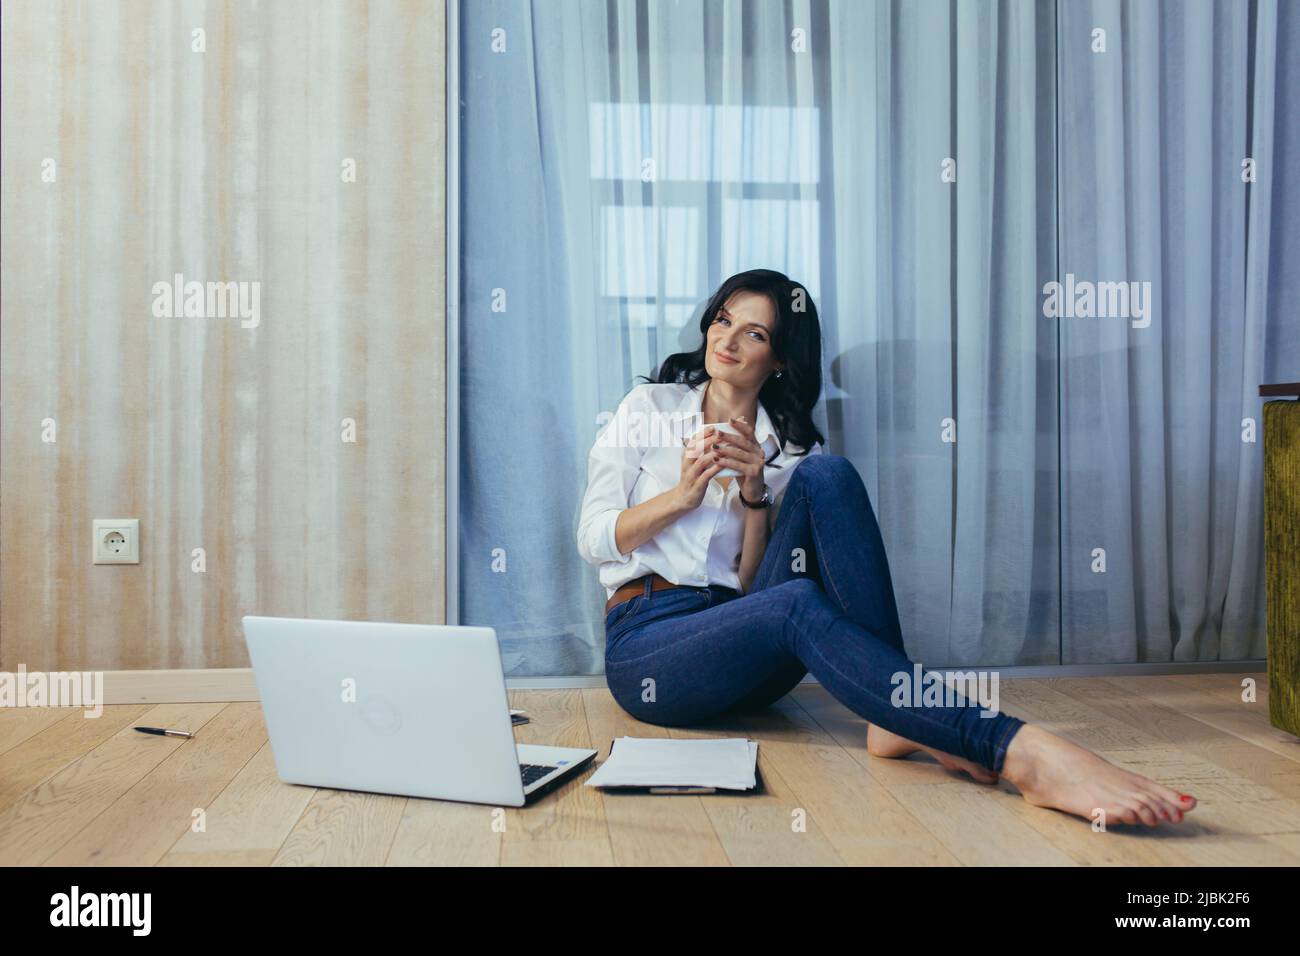 Belle jeune femme travaillant, faisant des affaires, étudiant à la maison en ligne, parlant au téléphone, sur la vidéo, assis sur le sol dans la chambre, faisant du papier Banque D'Images